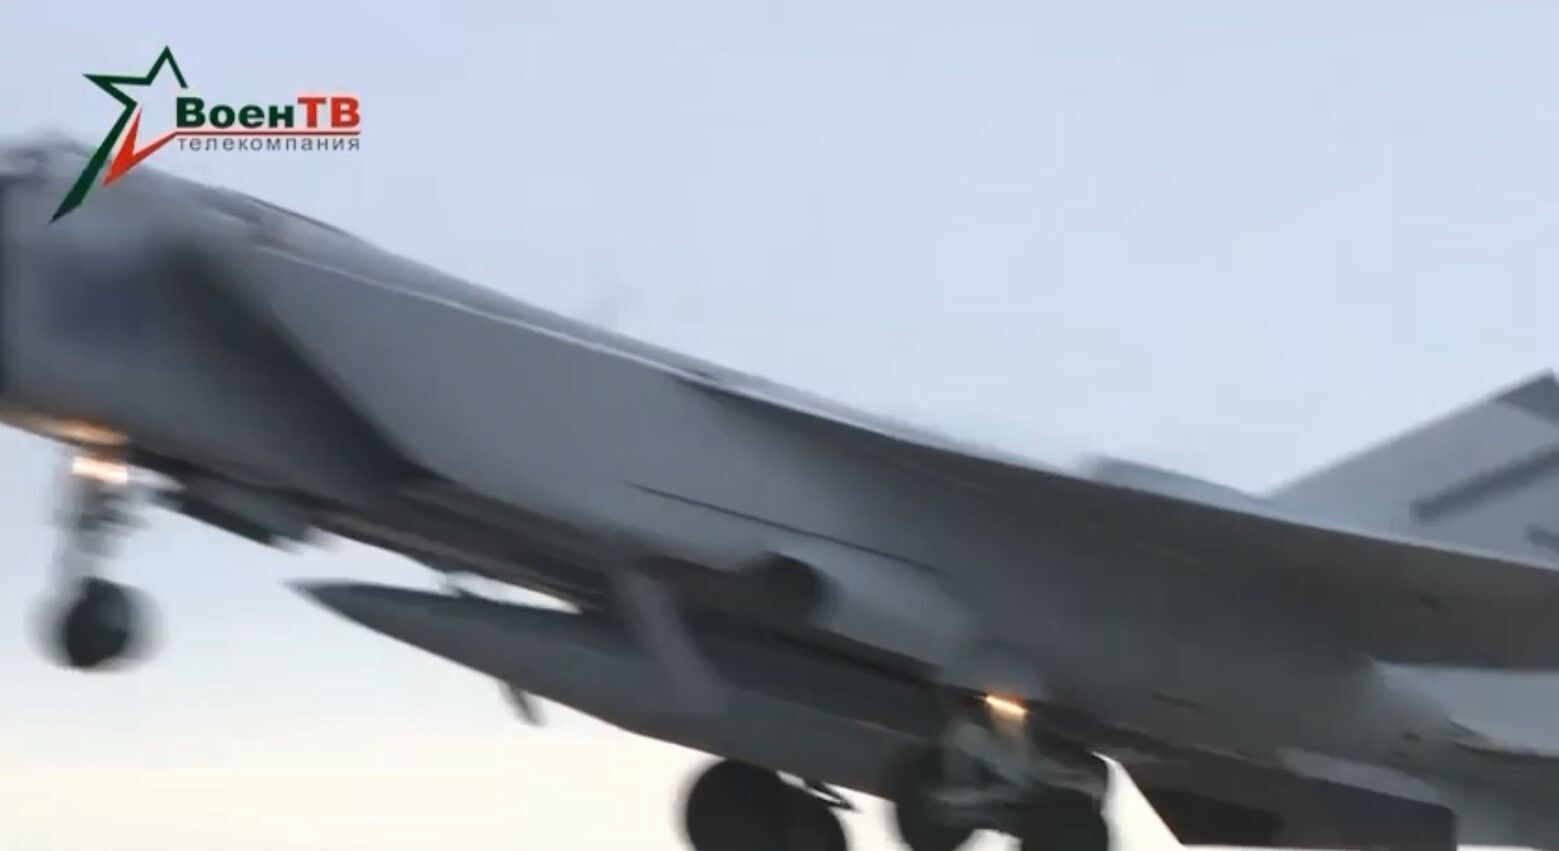 Російський МіГ-31 злетів з ракетою ''Кинджал'': відео старту з летовища у Білорусі